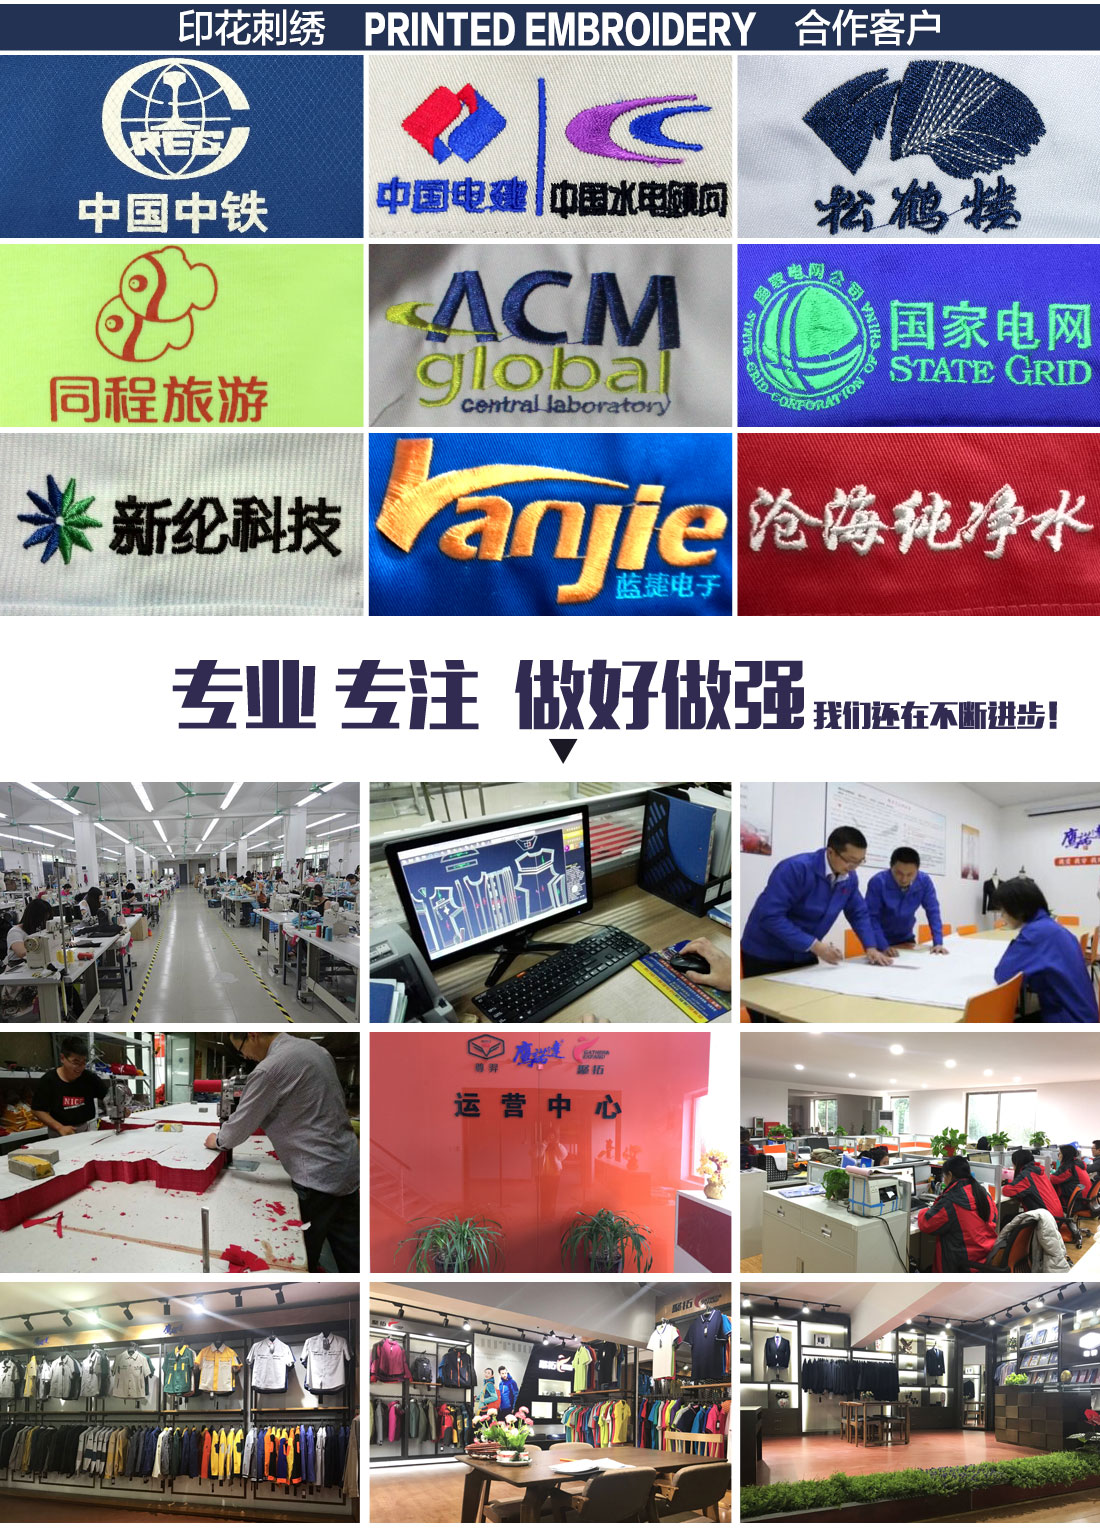 定制中国铁建工程工作服厂家的刺绣案例展示